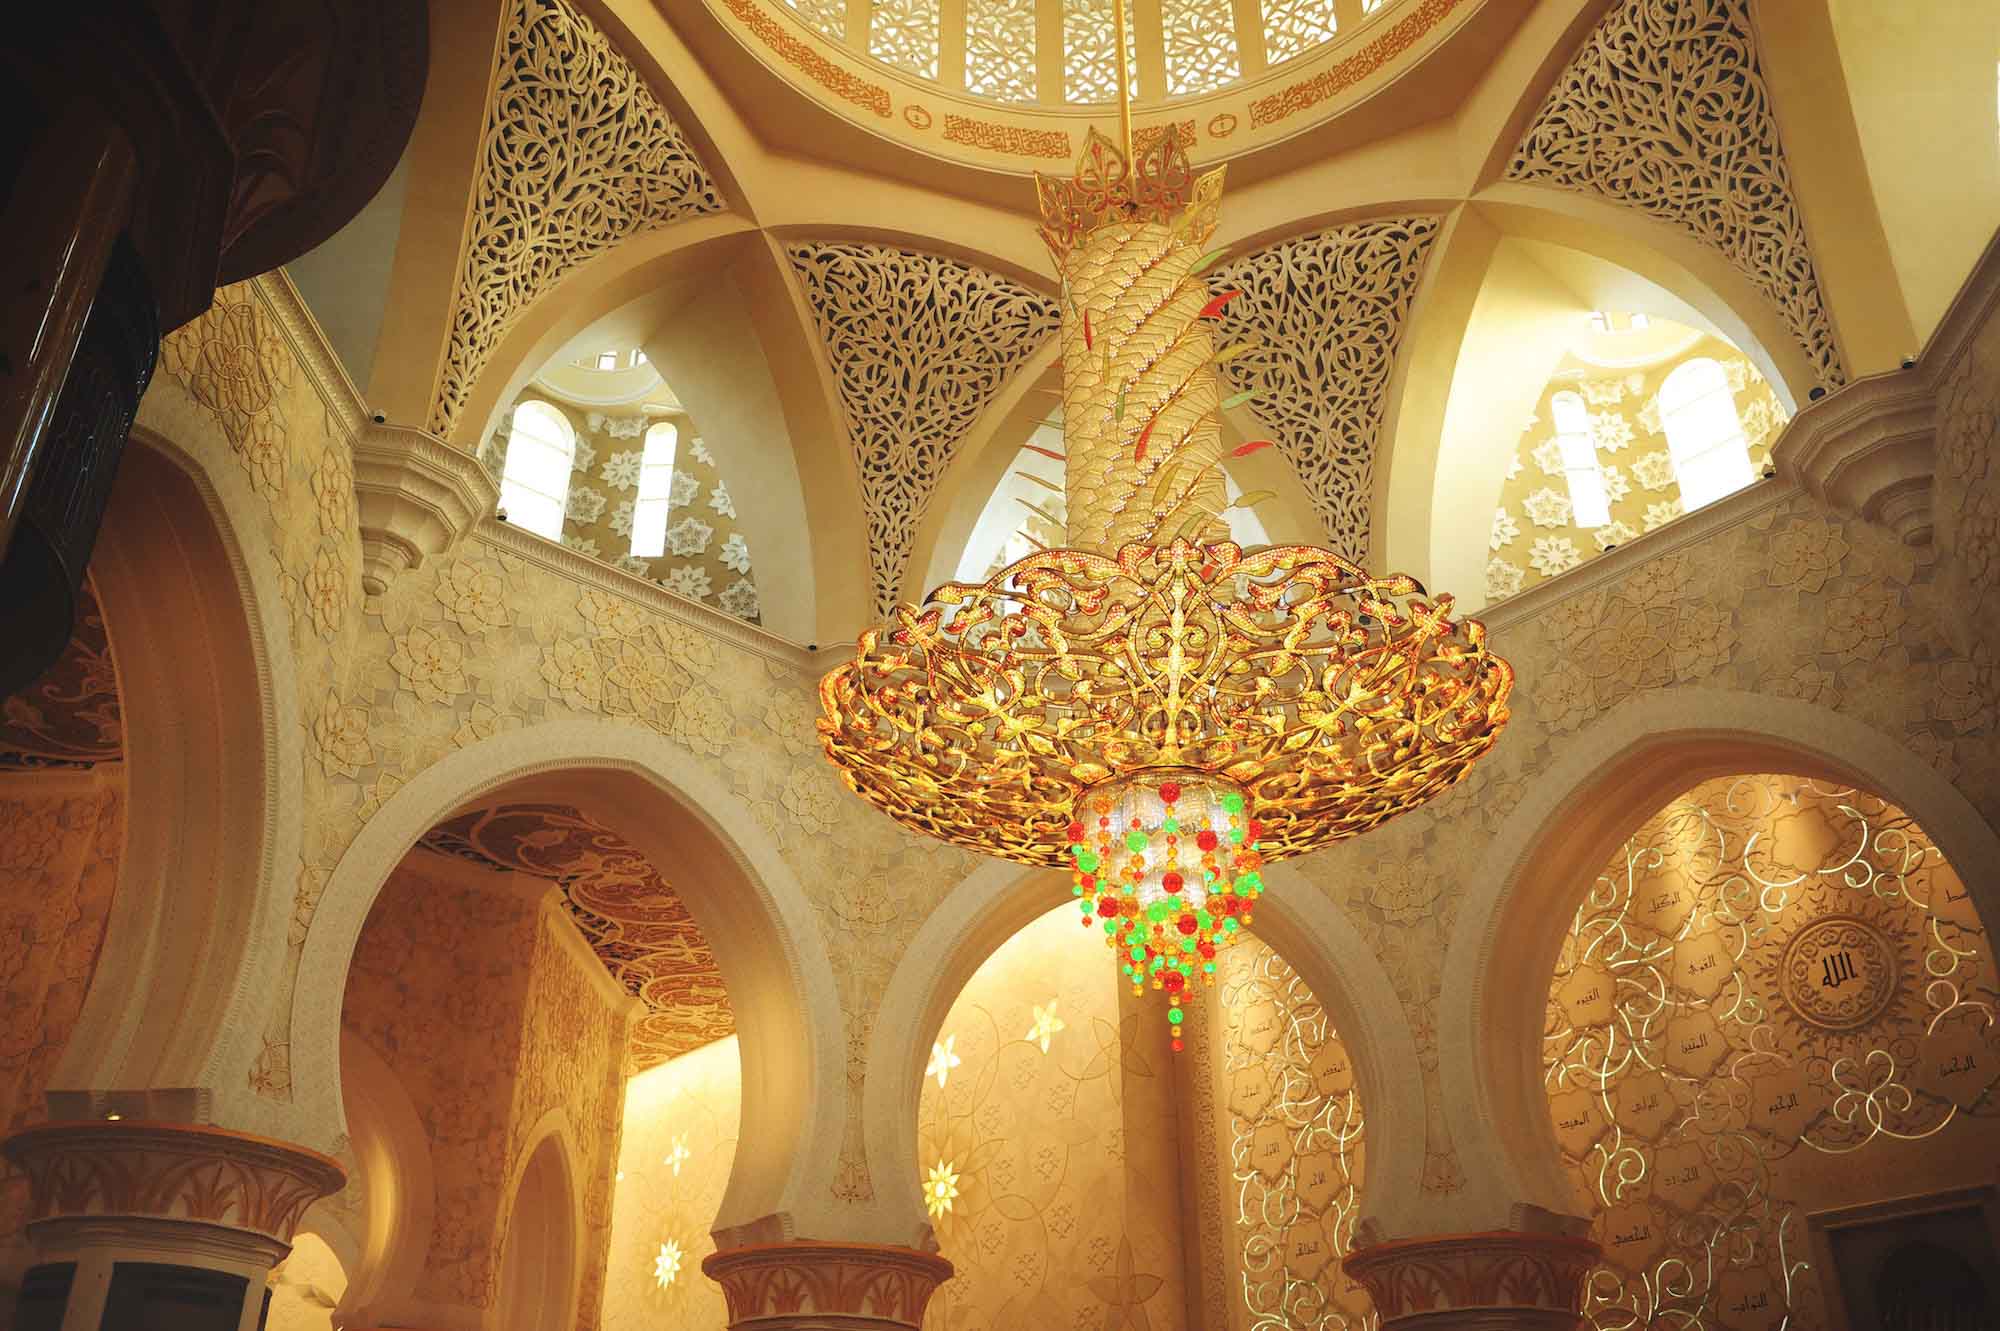  Mešitu šejka
Zayeda vo vnútri zdobia obrovské lustre, ktoré sú vyrobené z tých najdrahších a
najkvalitnejších materiálov.